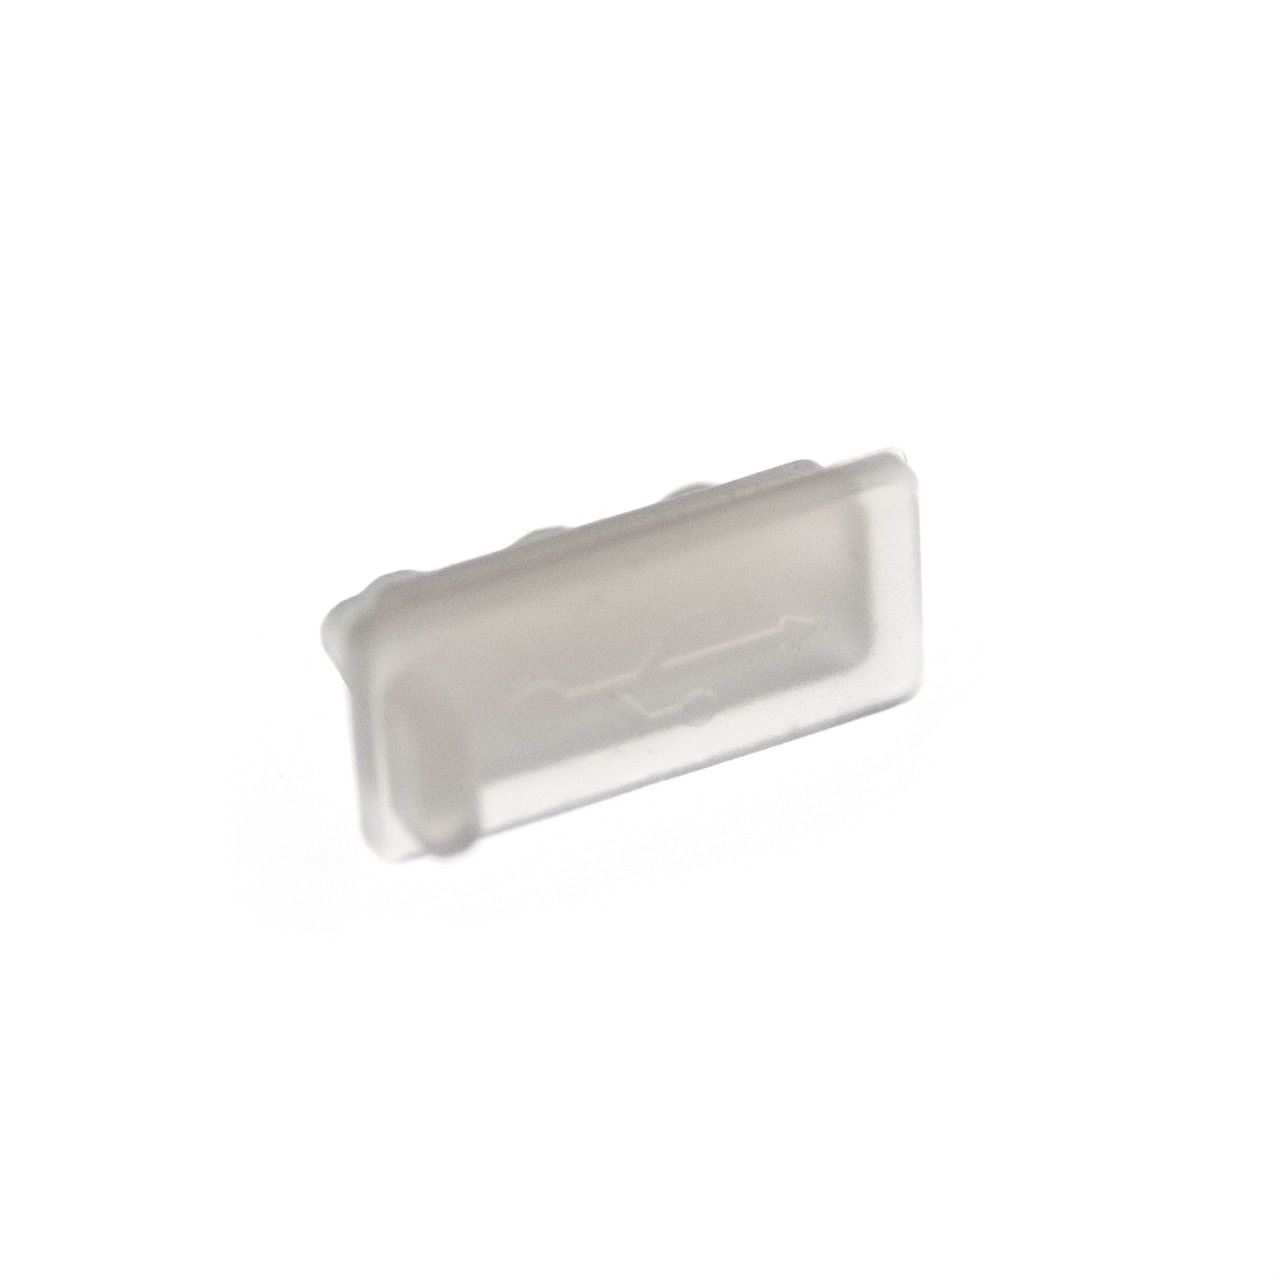 Zaślepka gniazda USB-A / USB 3.0